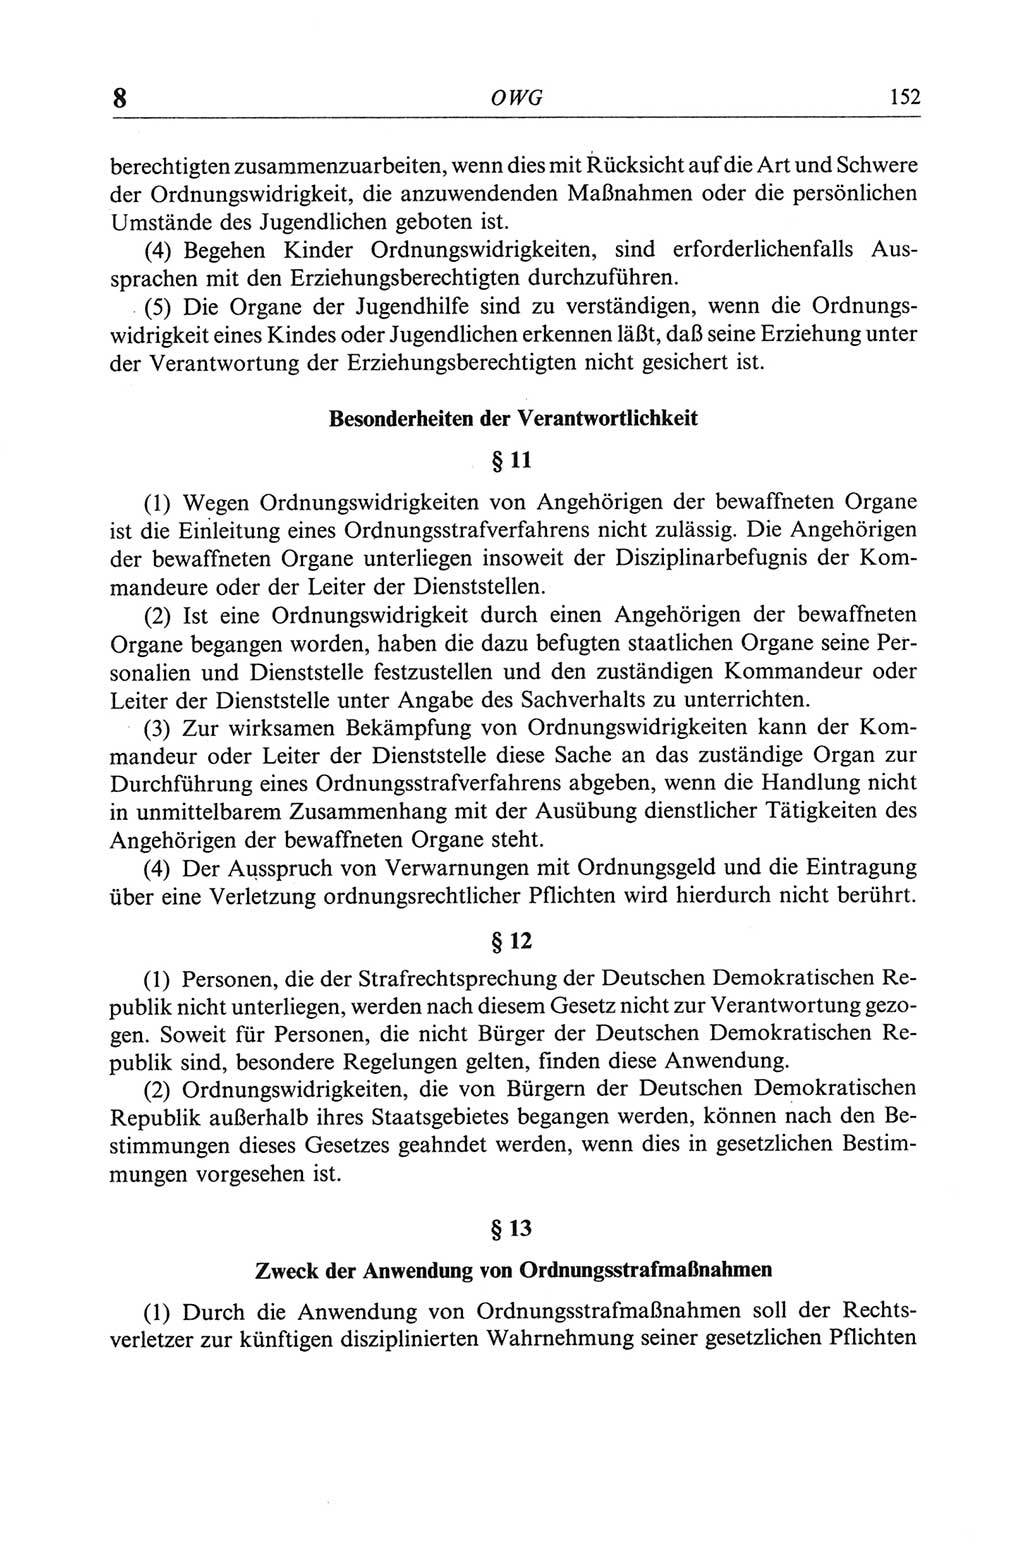 Strafgesetzbuch (StGB) der Deutschen Demokratischen Republik (DDR) und angrenzende Gesetze und Bestimmungen 1968, Seite 152 (StGB Ges. Best. DDR 1968, S. 152)